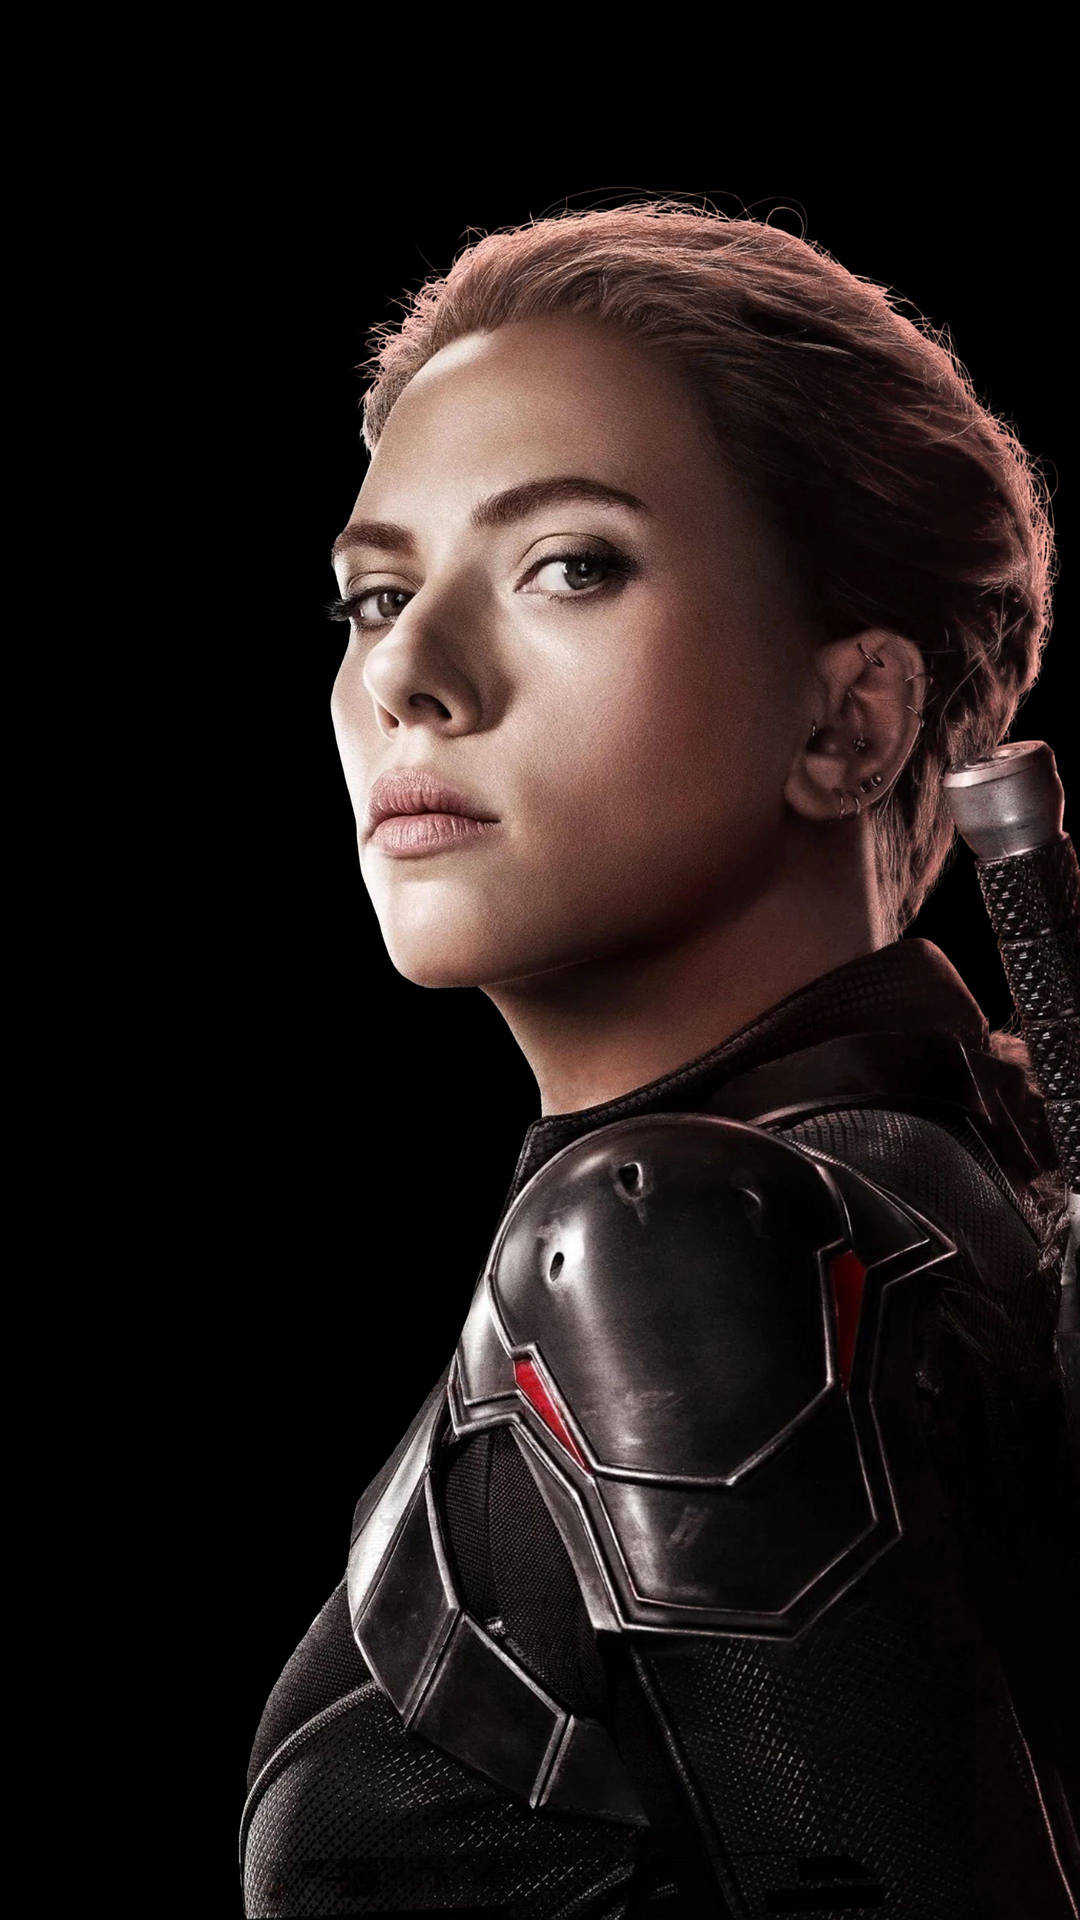 Scarlett Johansson as Black Widow Wallpaper